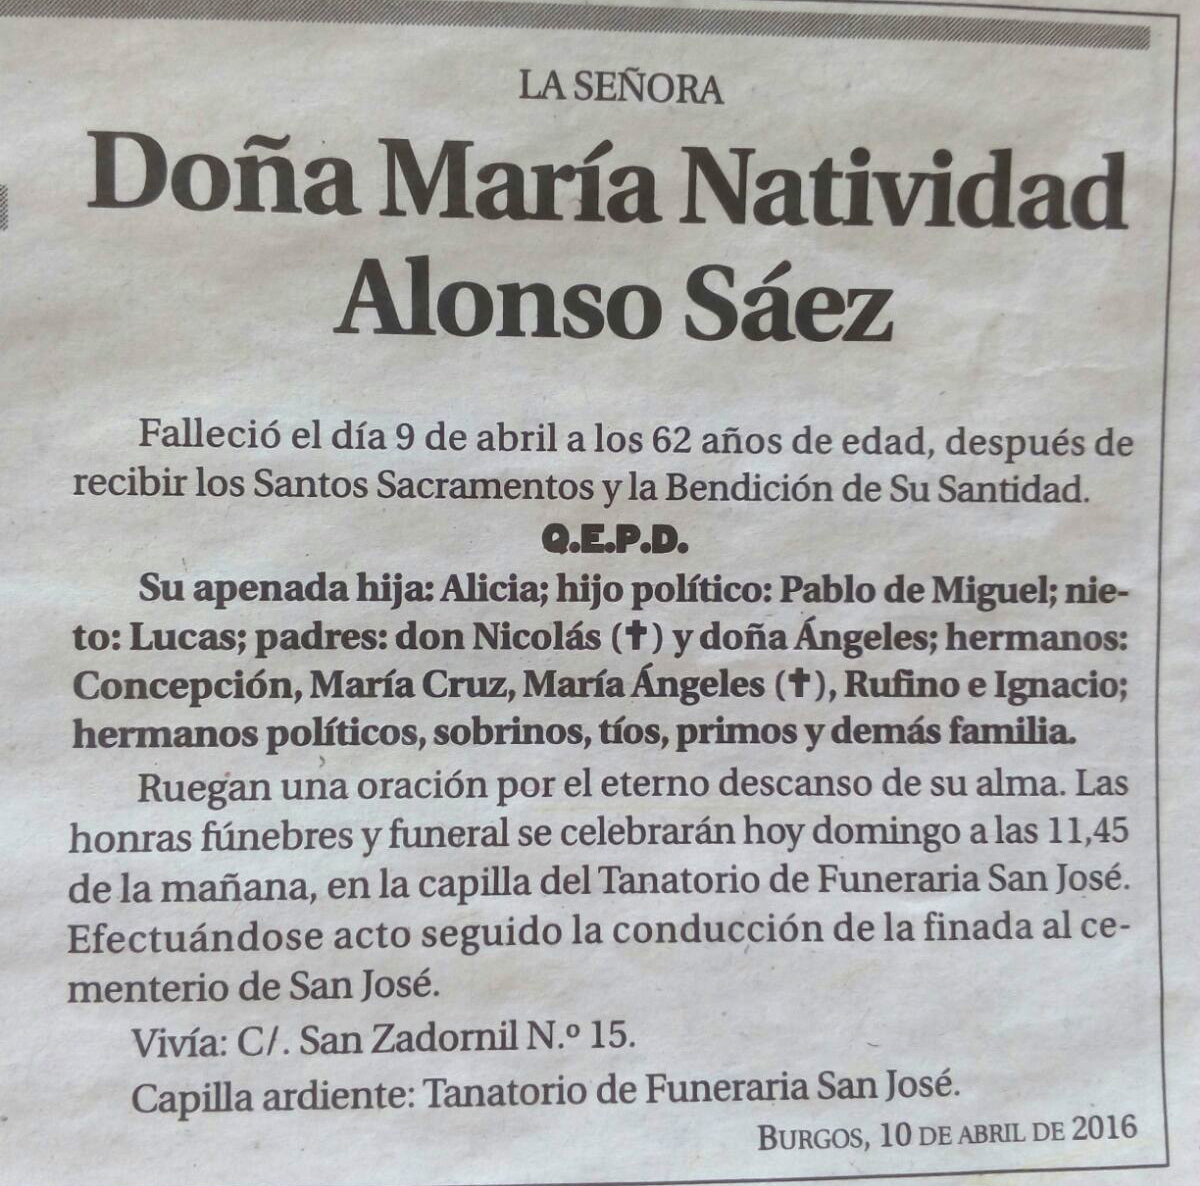 Esquela de Doña María Natividad Alonso Sáez, falleció el 9 de abril de 2016 en Burgos, a los 62 años